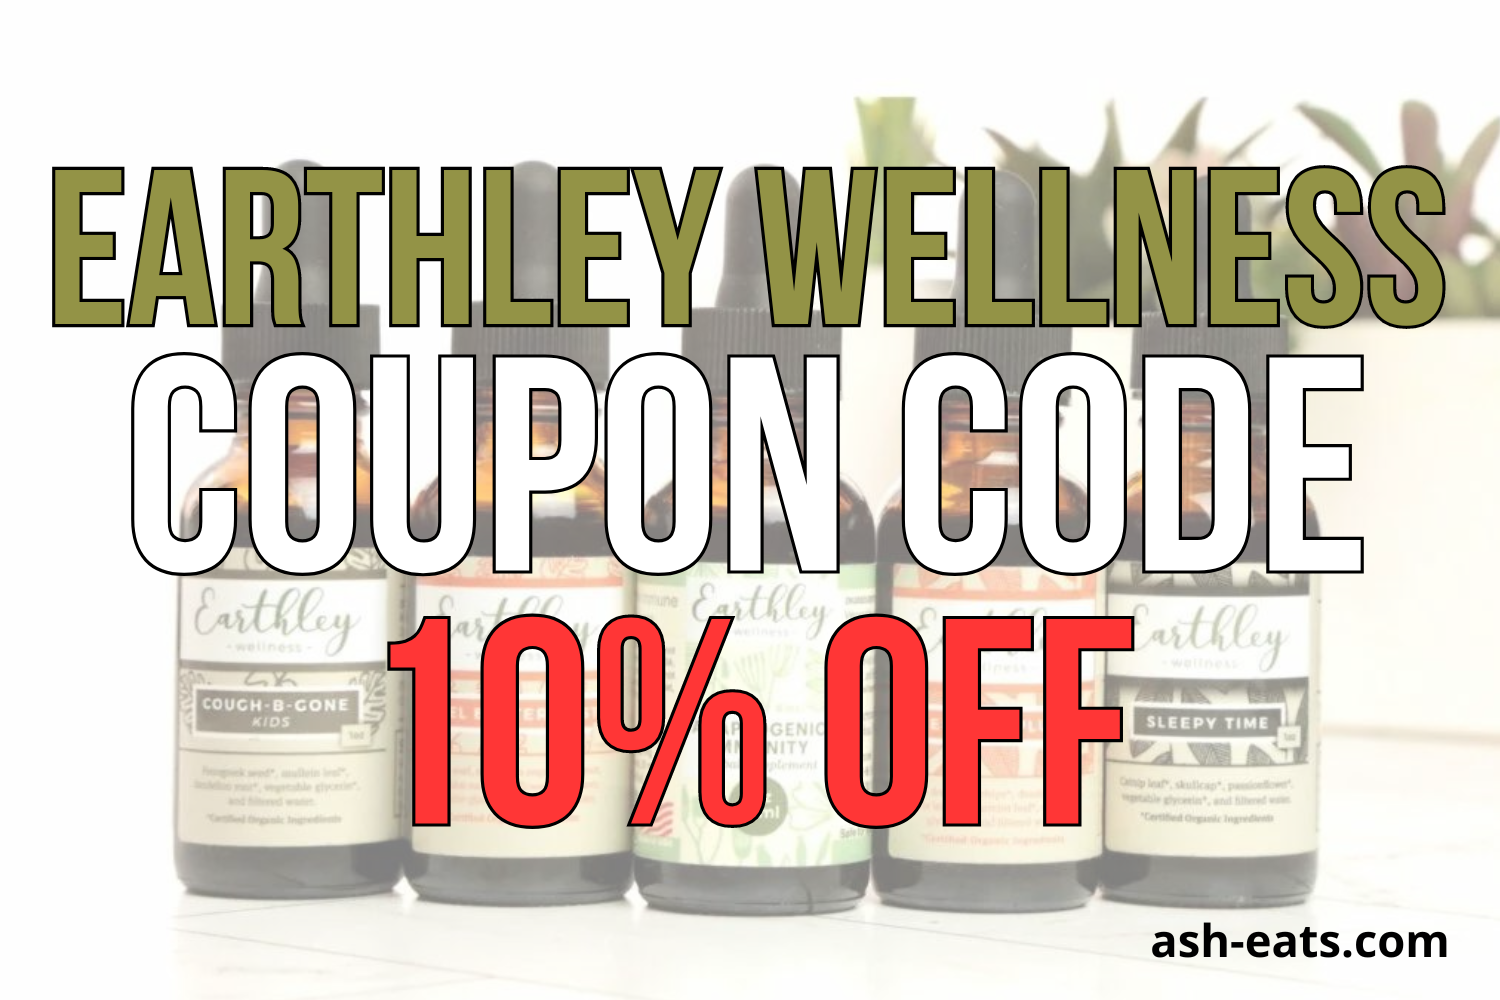 earthley wellness coupon code